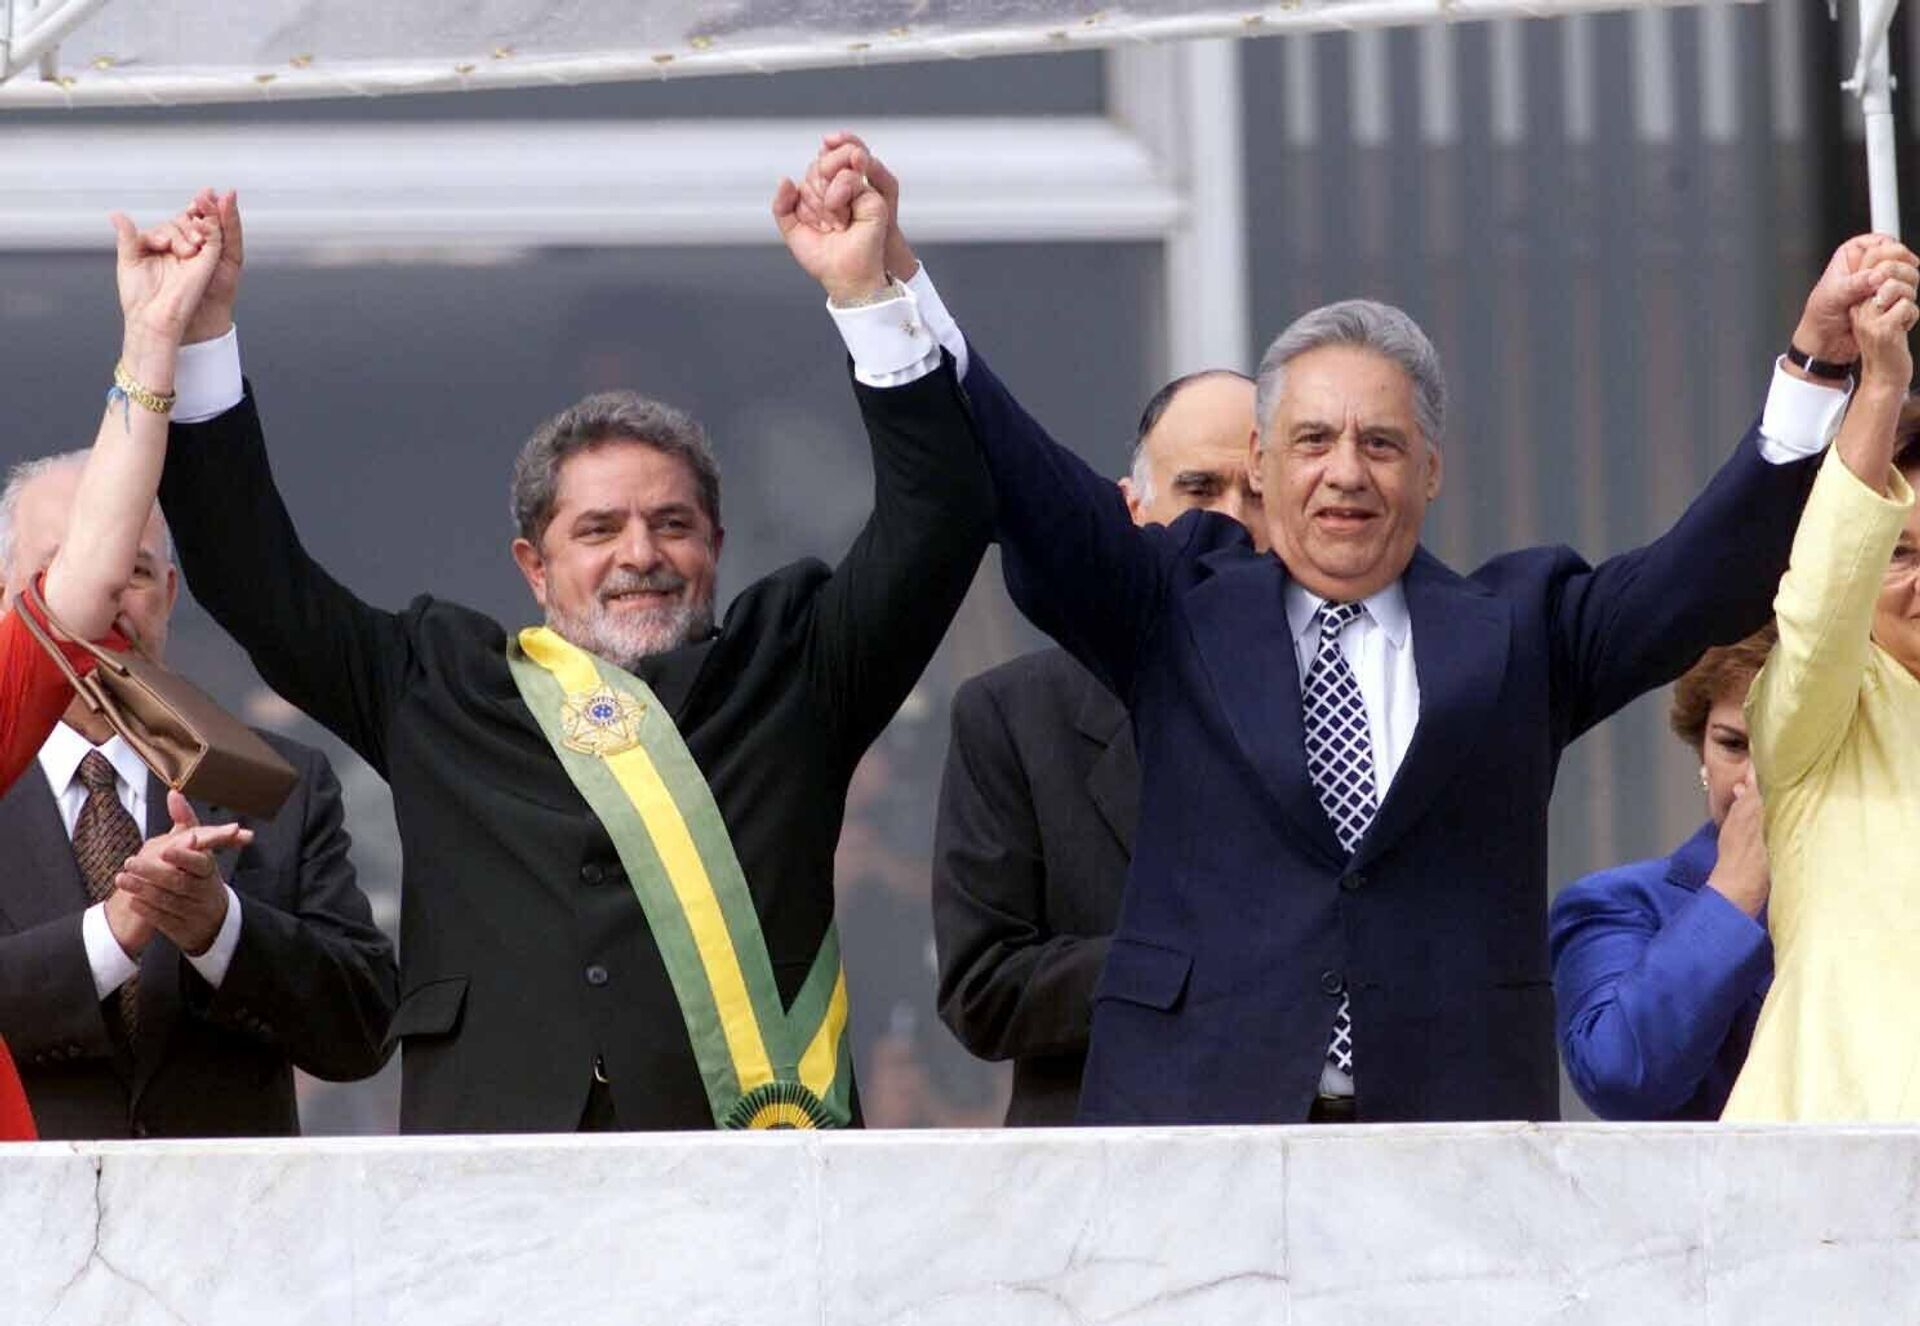 Luiz Inácio Lula da Silva (PT) ao lado de seu antecessor, Fernando Henrique Cardoso (PSDB), após receber a faixa presidencial no parlatório do Palácio do Planalto, em Brasília (DF), em 1º de janeiro de 2003 - Sputnik Brasil, 1920, 02.10.2022